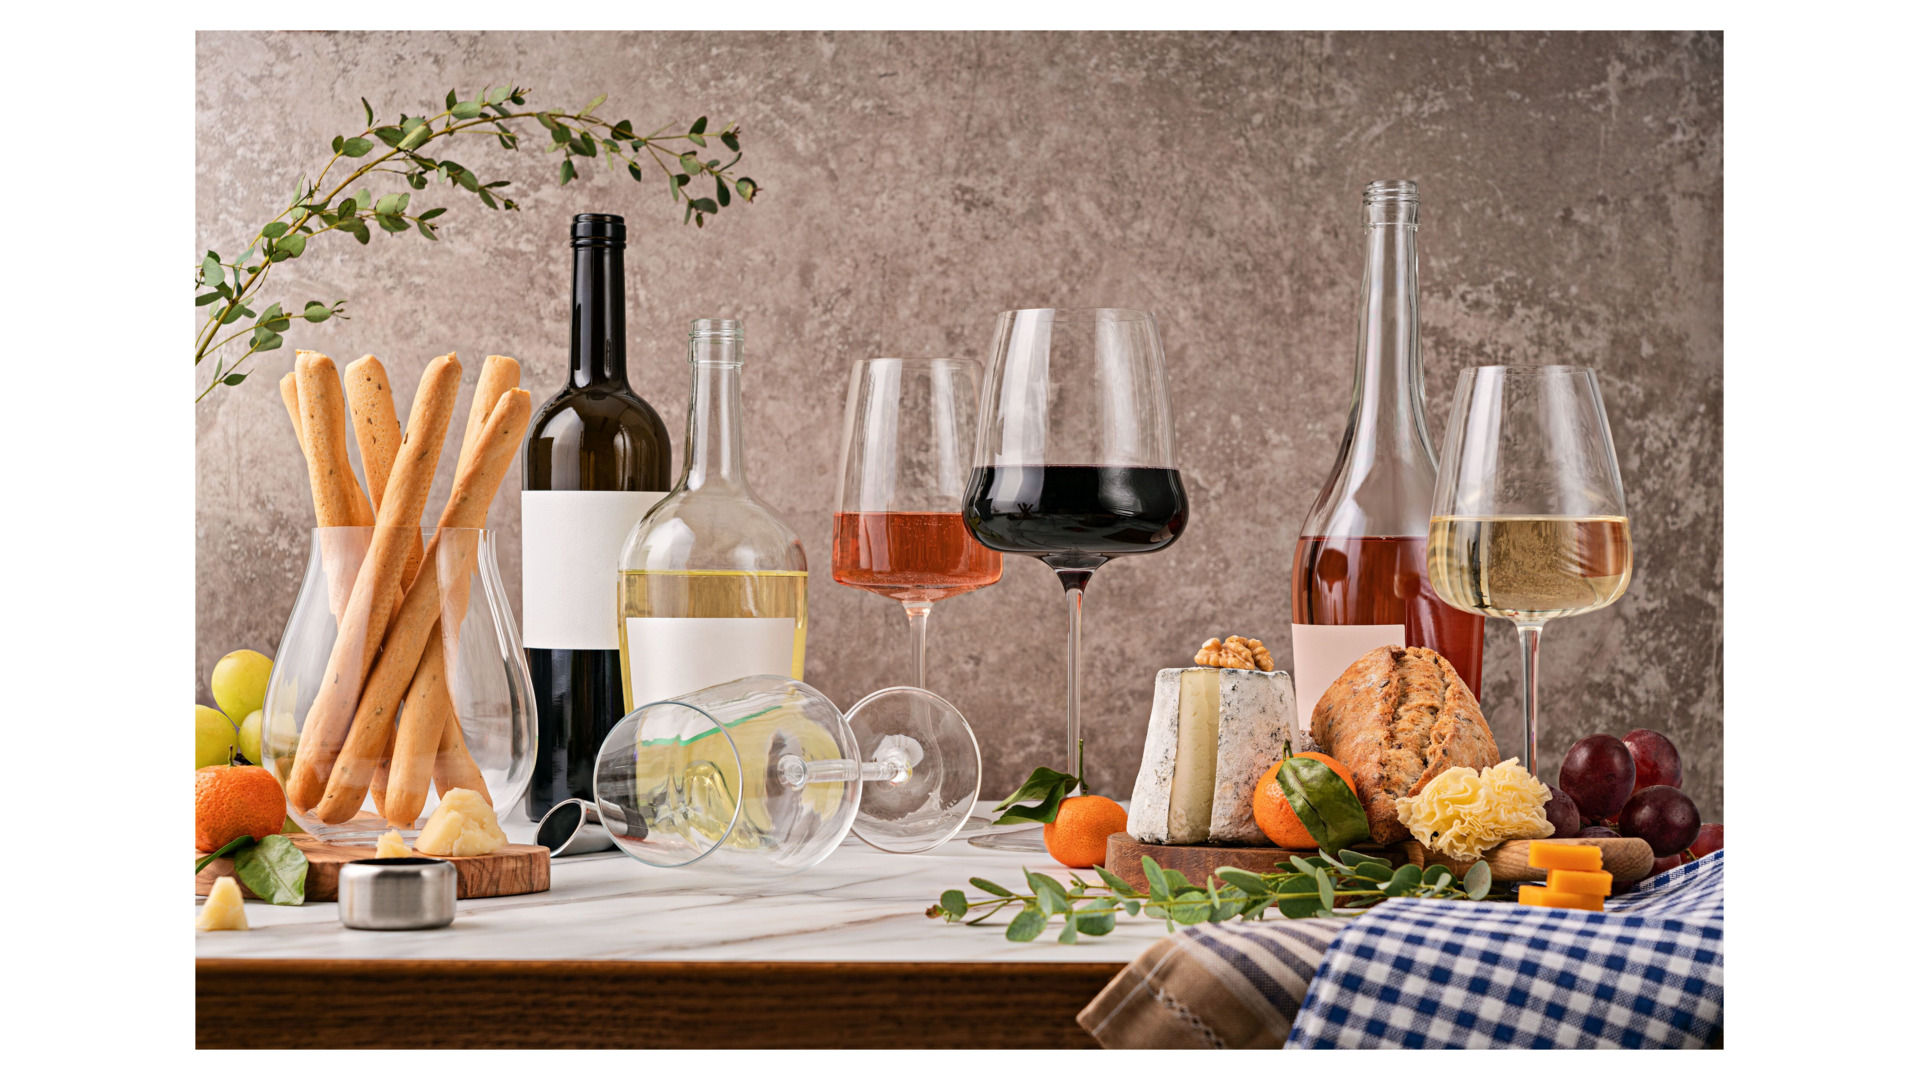 Набор бокалов для белого вина Luigi Bormioli Талисман Шардоне 450 мл, 4 шт, стекло хрустальное